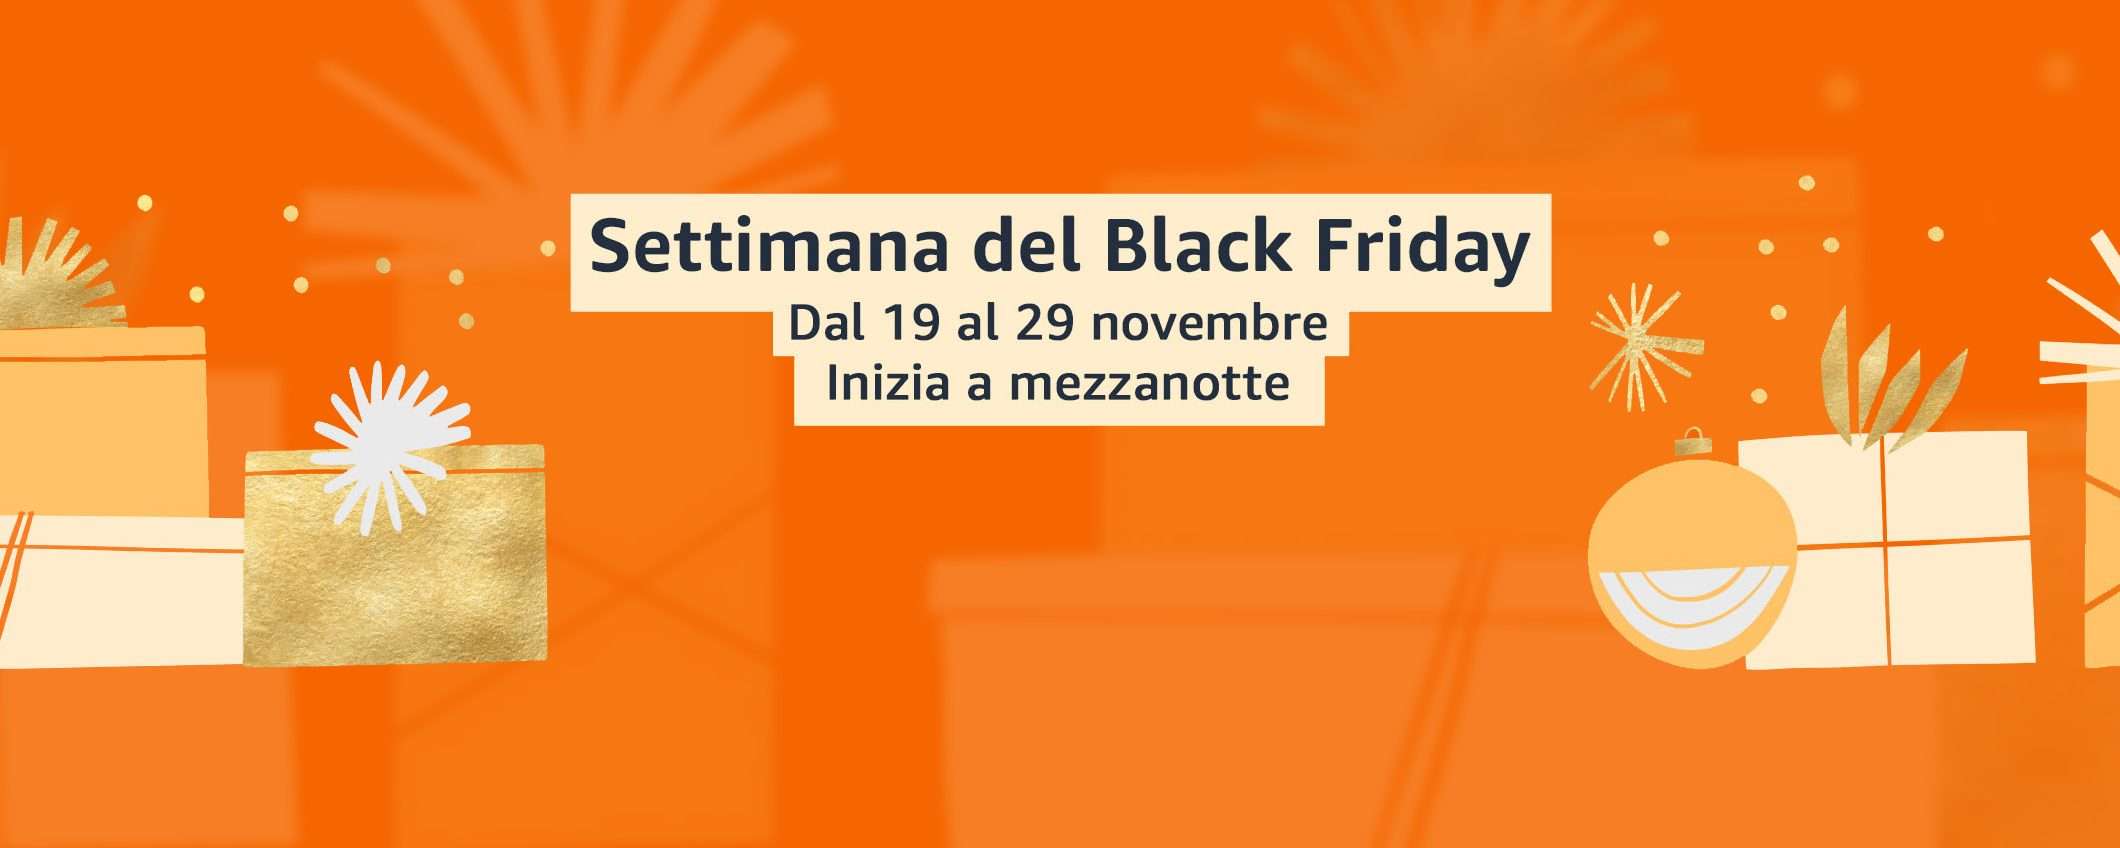 Il Black Friday di Amazon inizia il 19 novembre